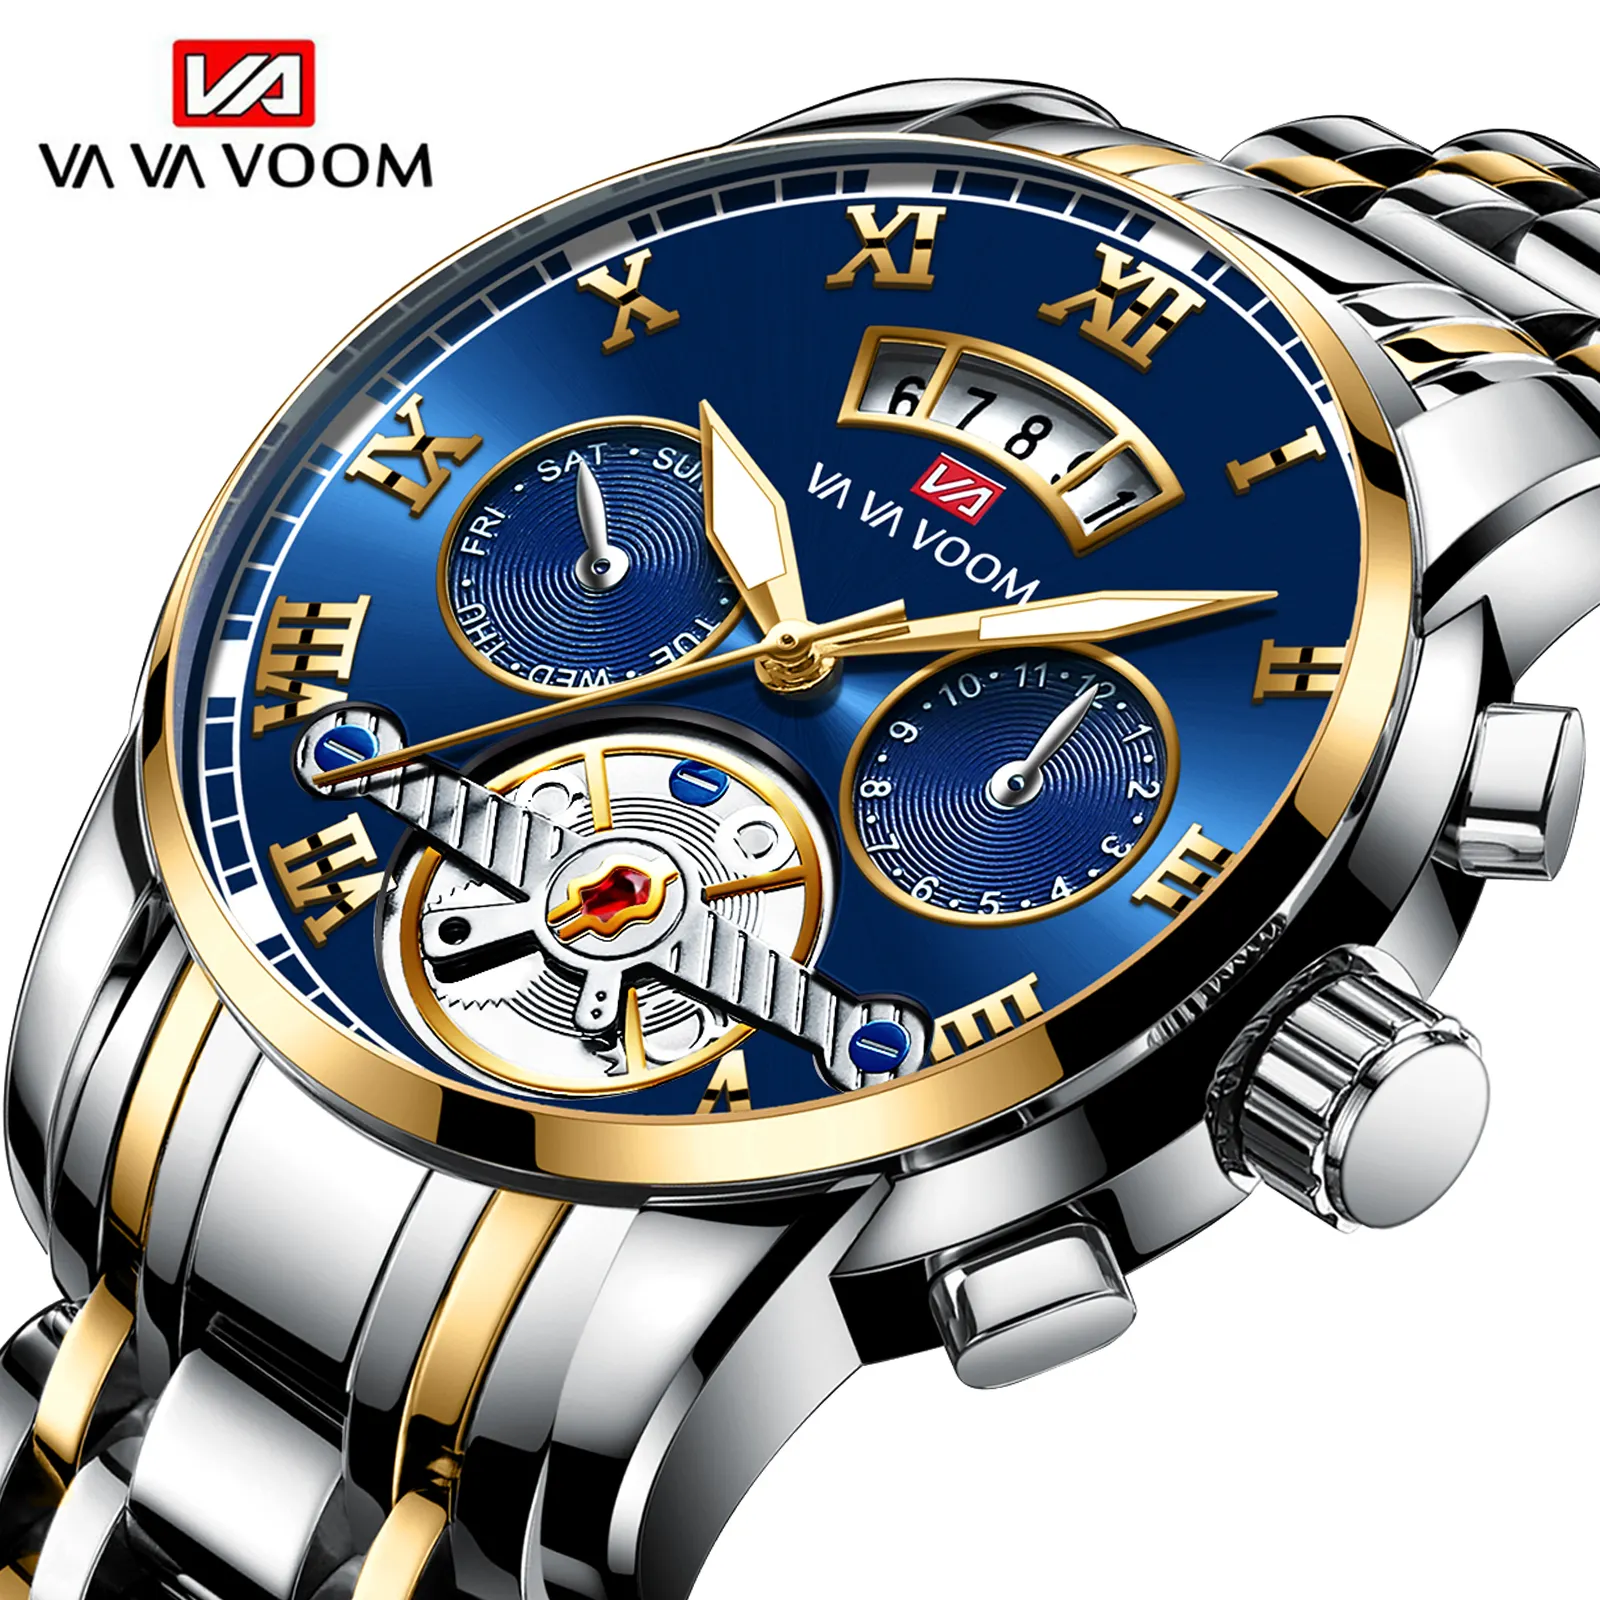 VAVA VOOM 2453 luxe fabriqué en chine montre à quartz pour homme élégant bracelet en acier inoxydable chronographe lumineux en stock montre d'affaires